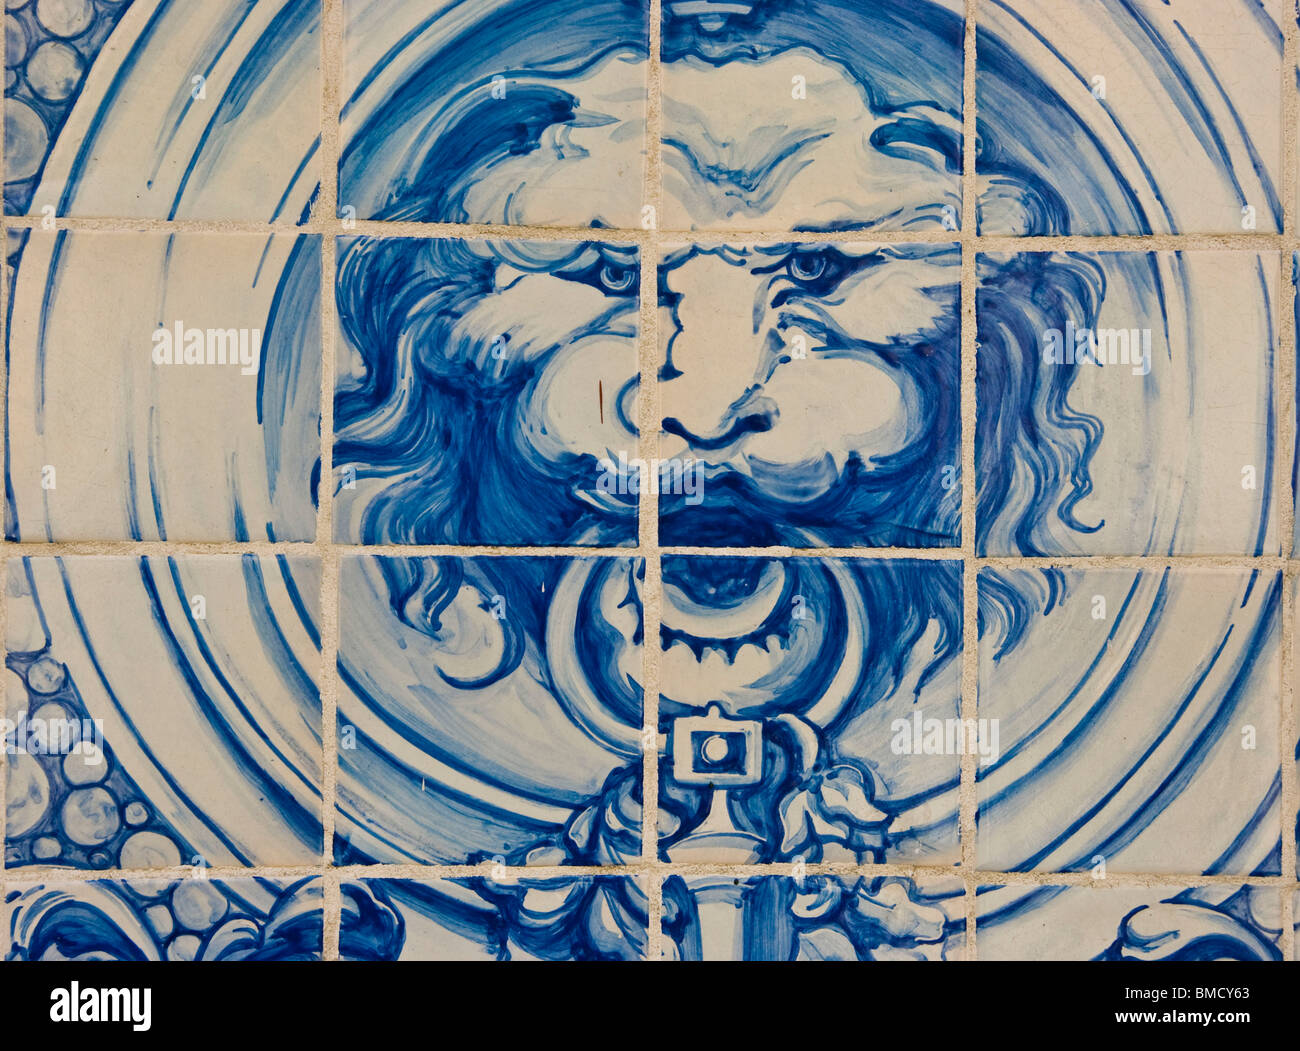 Tête de Lion azulejos carreaux de céramique photo Lisbonne Portugal Europe de l'ouest Banque D'Images